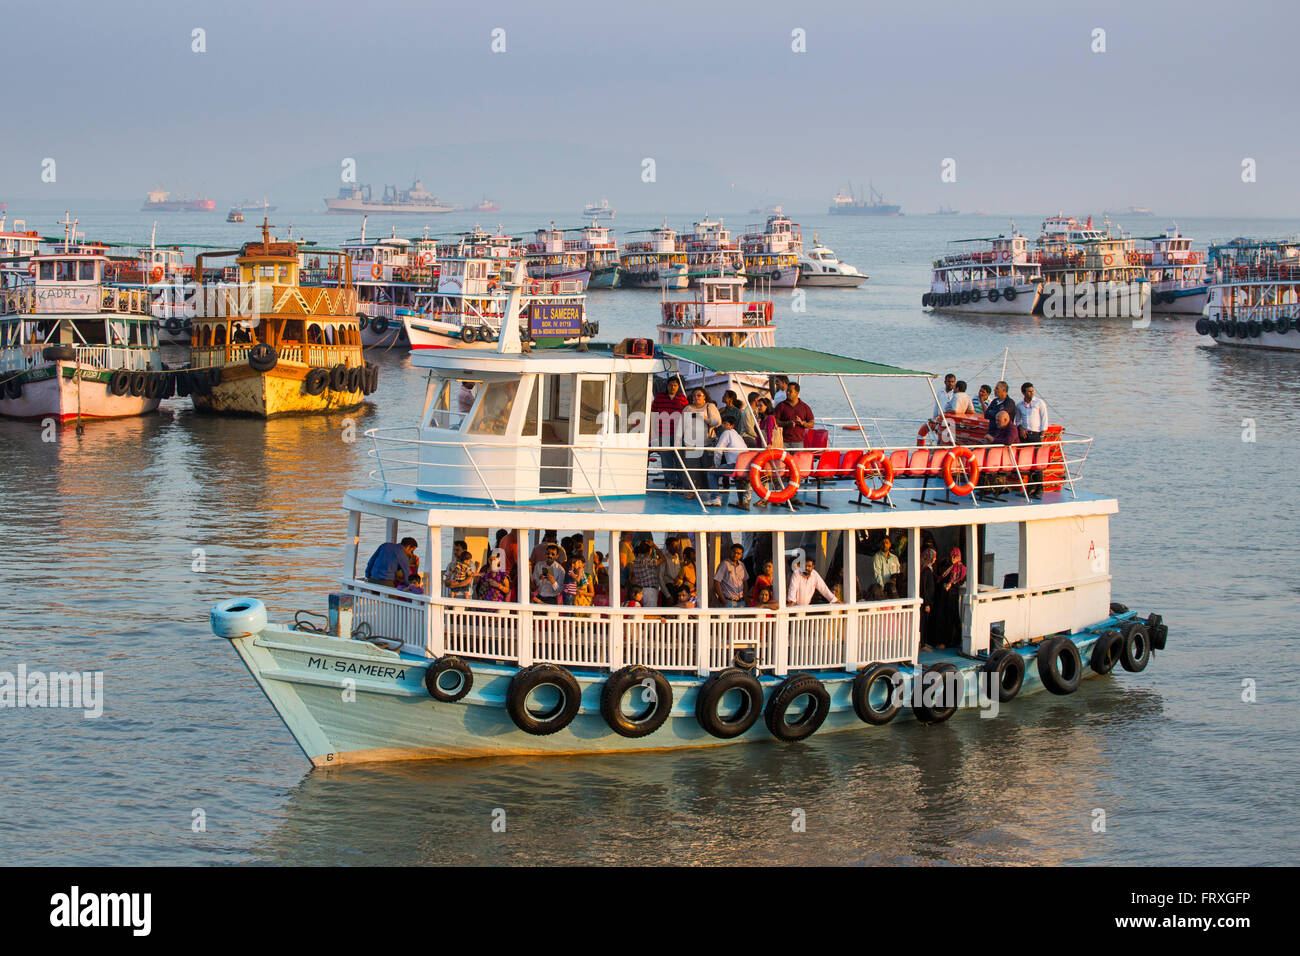 Tour boats in harbor near the Gateway to India, Mumbai, Maharashtra, India Stock Photo